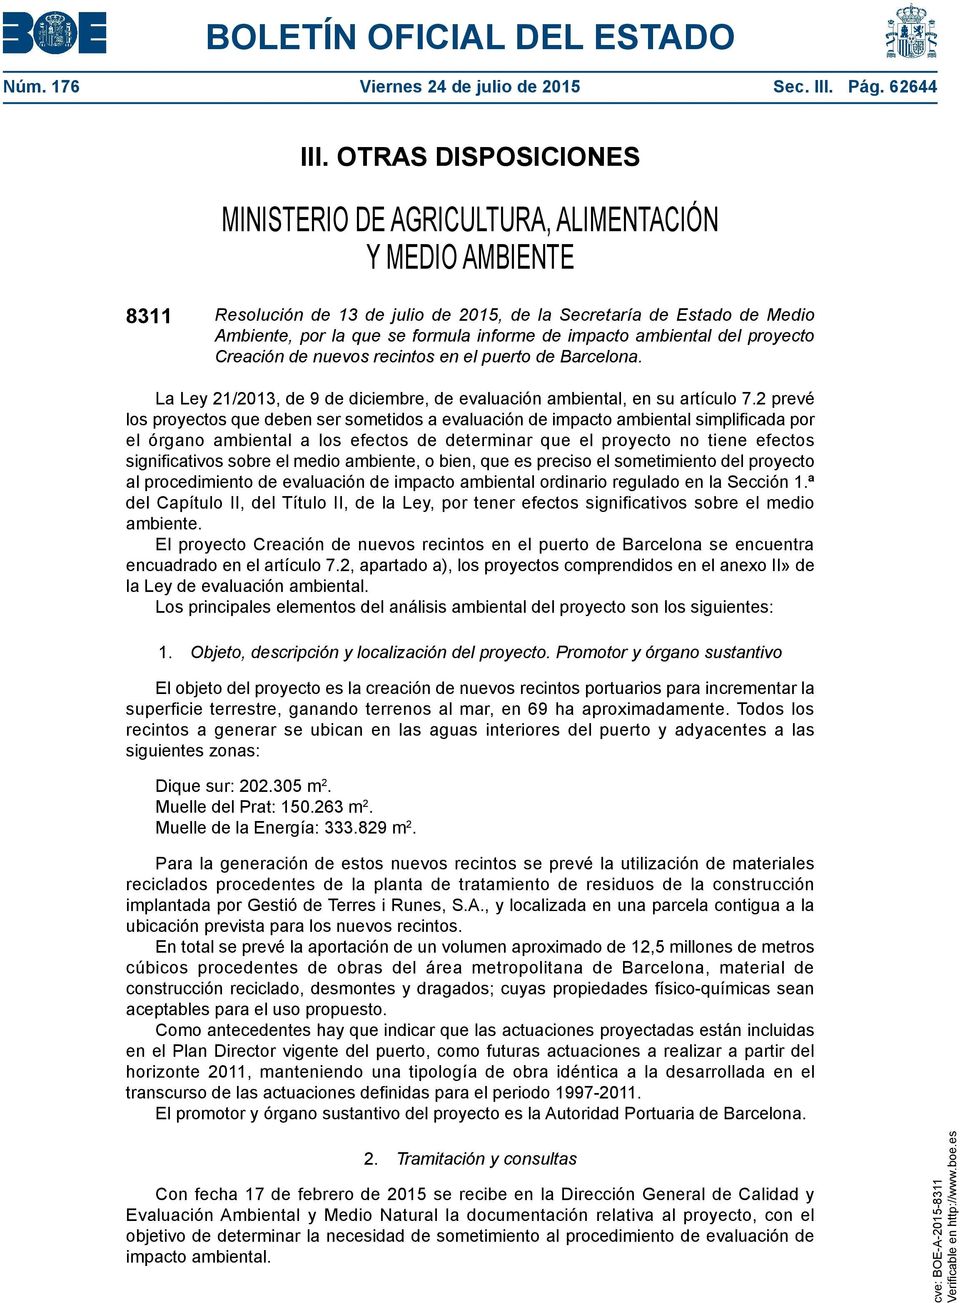 impacto ambiental del proyecto Creación de nuevos recintos en el puerto de Barcelona. La Ley 21/2013, de 9 de diciembre, de evaluación ambiental, en su artículo 7.